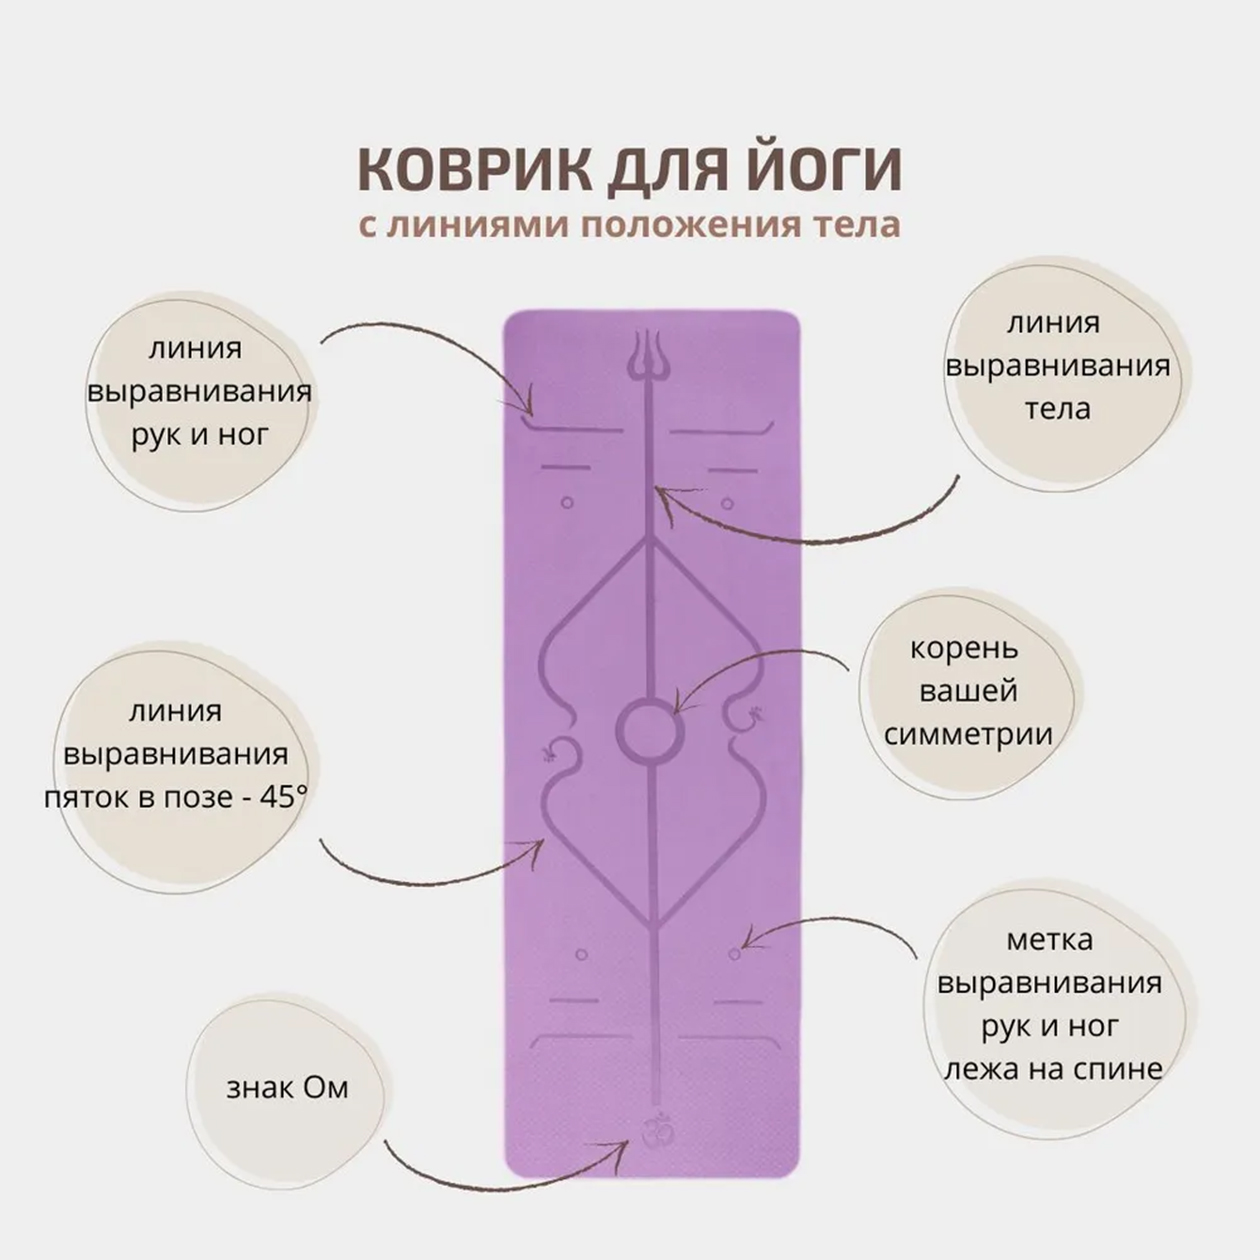 По линиям разметки легко выравнивать положение туловища, рук и ног. Источник: ozon.ru